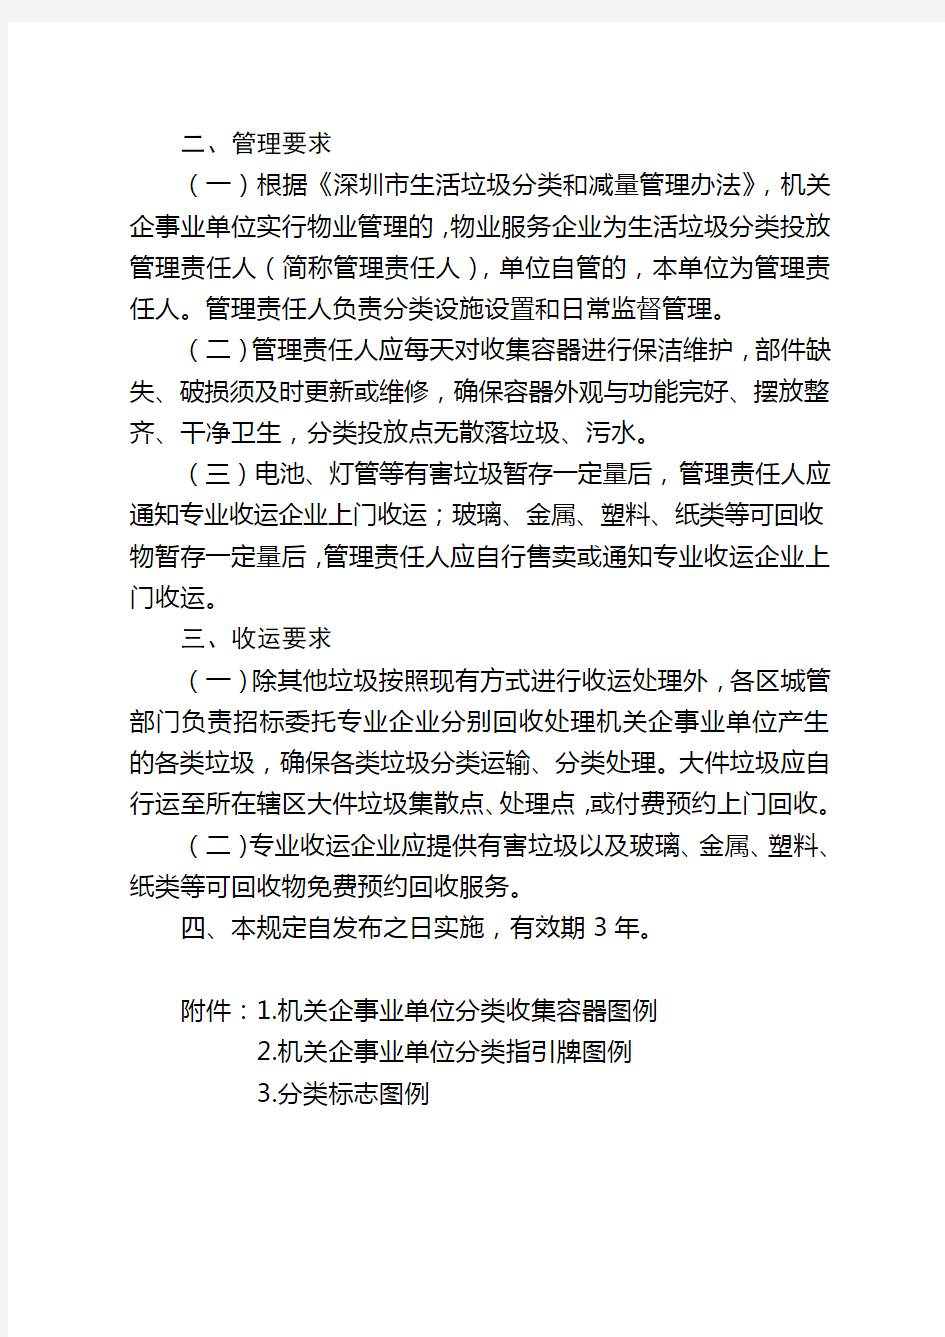 深圳机关企事业单位生活垃圾分类设施设置及管理规定